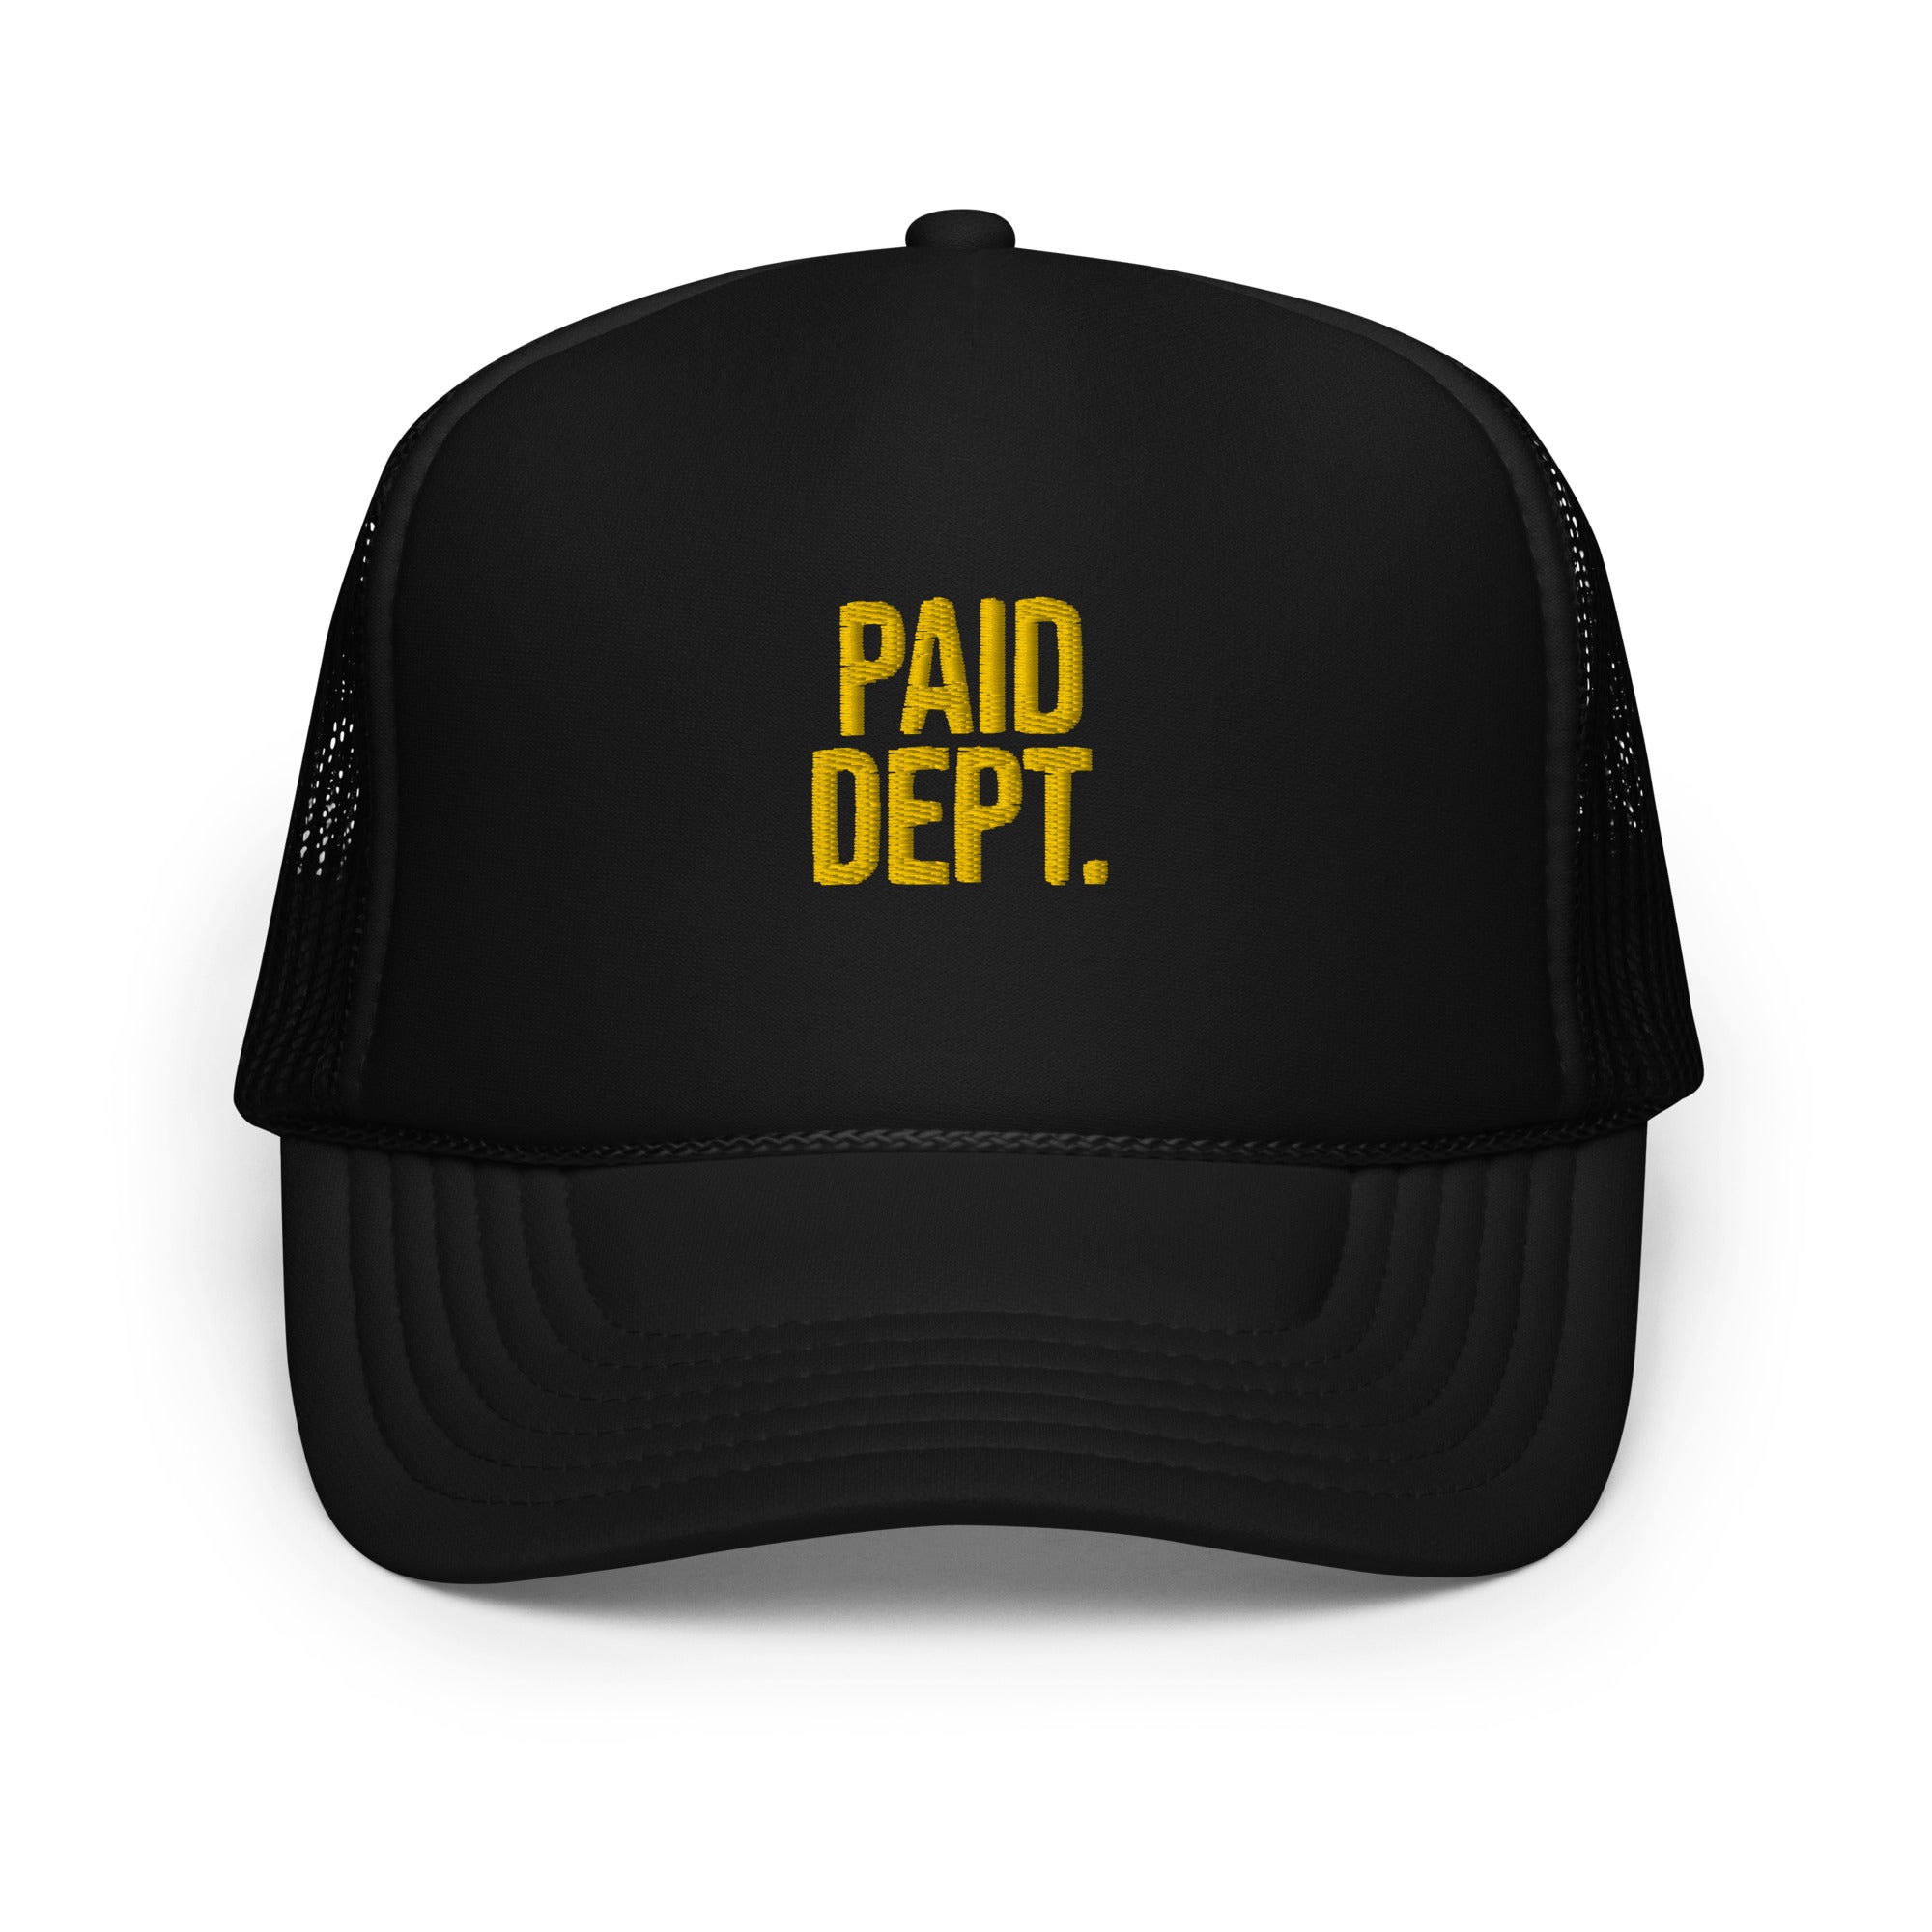 Paid Dept. Foam trucker hat